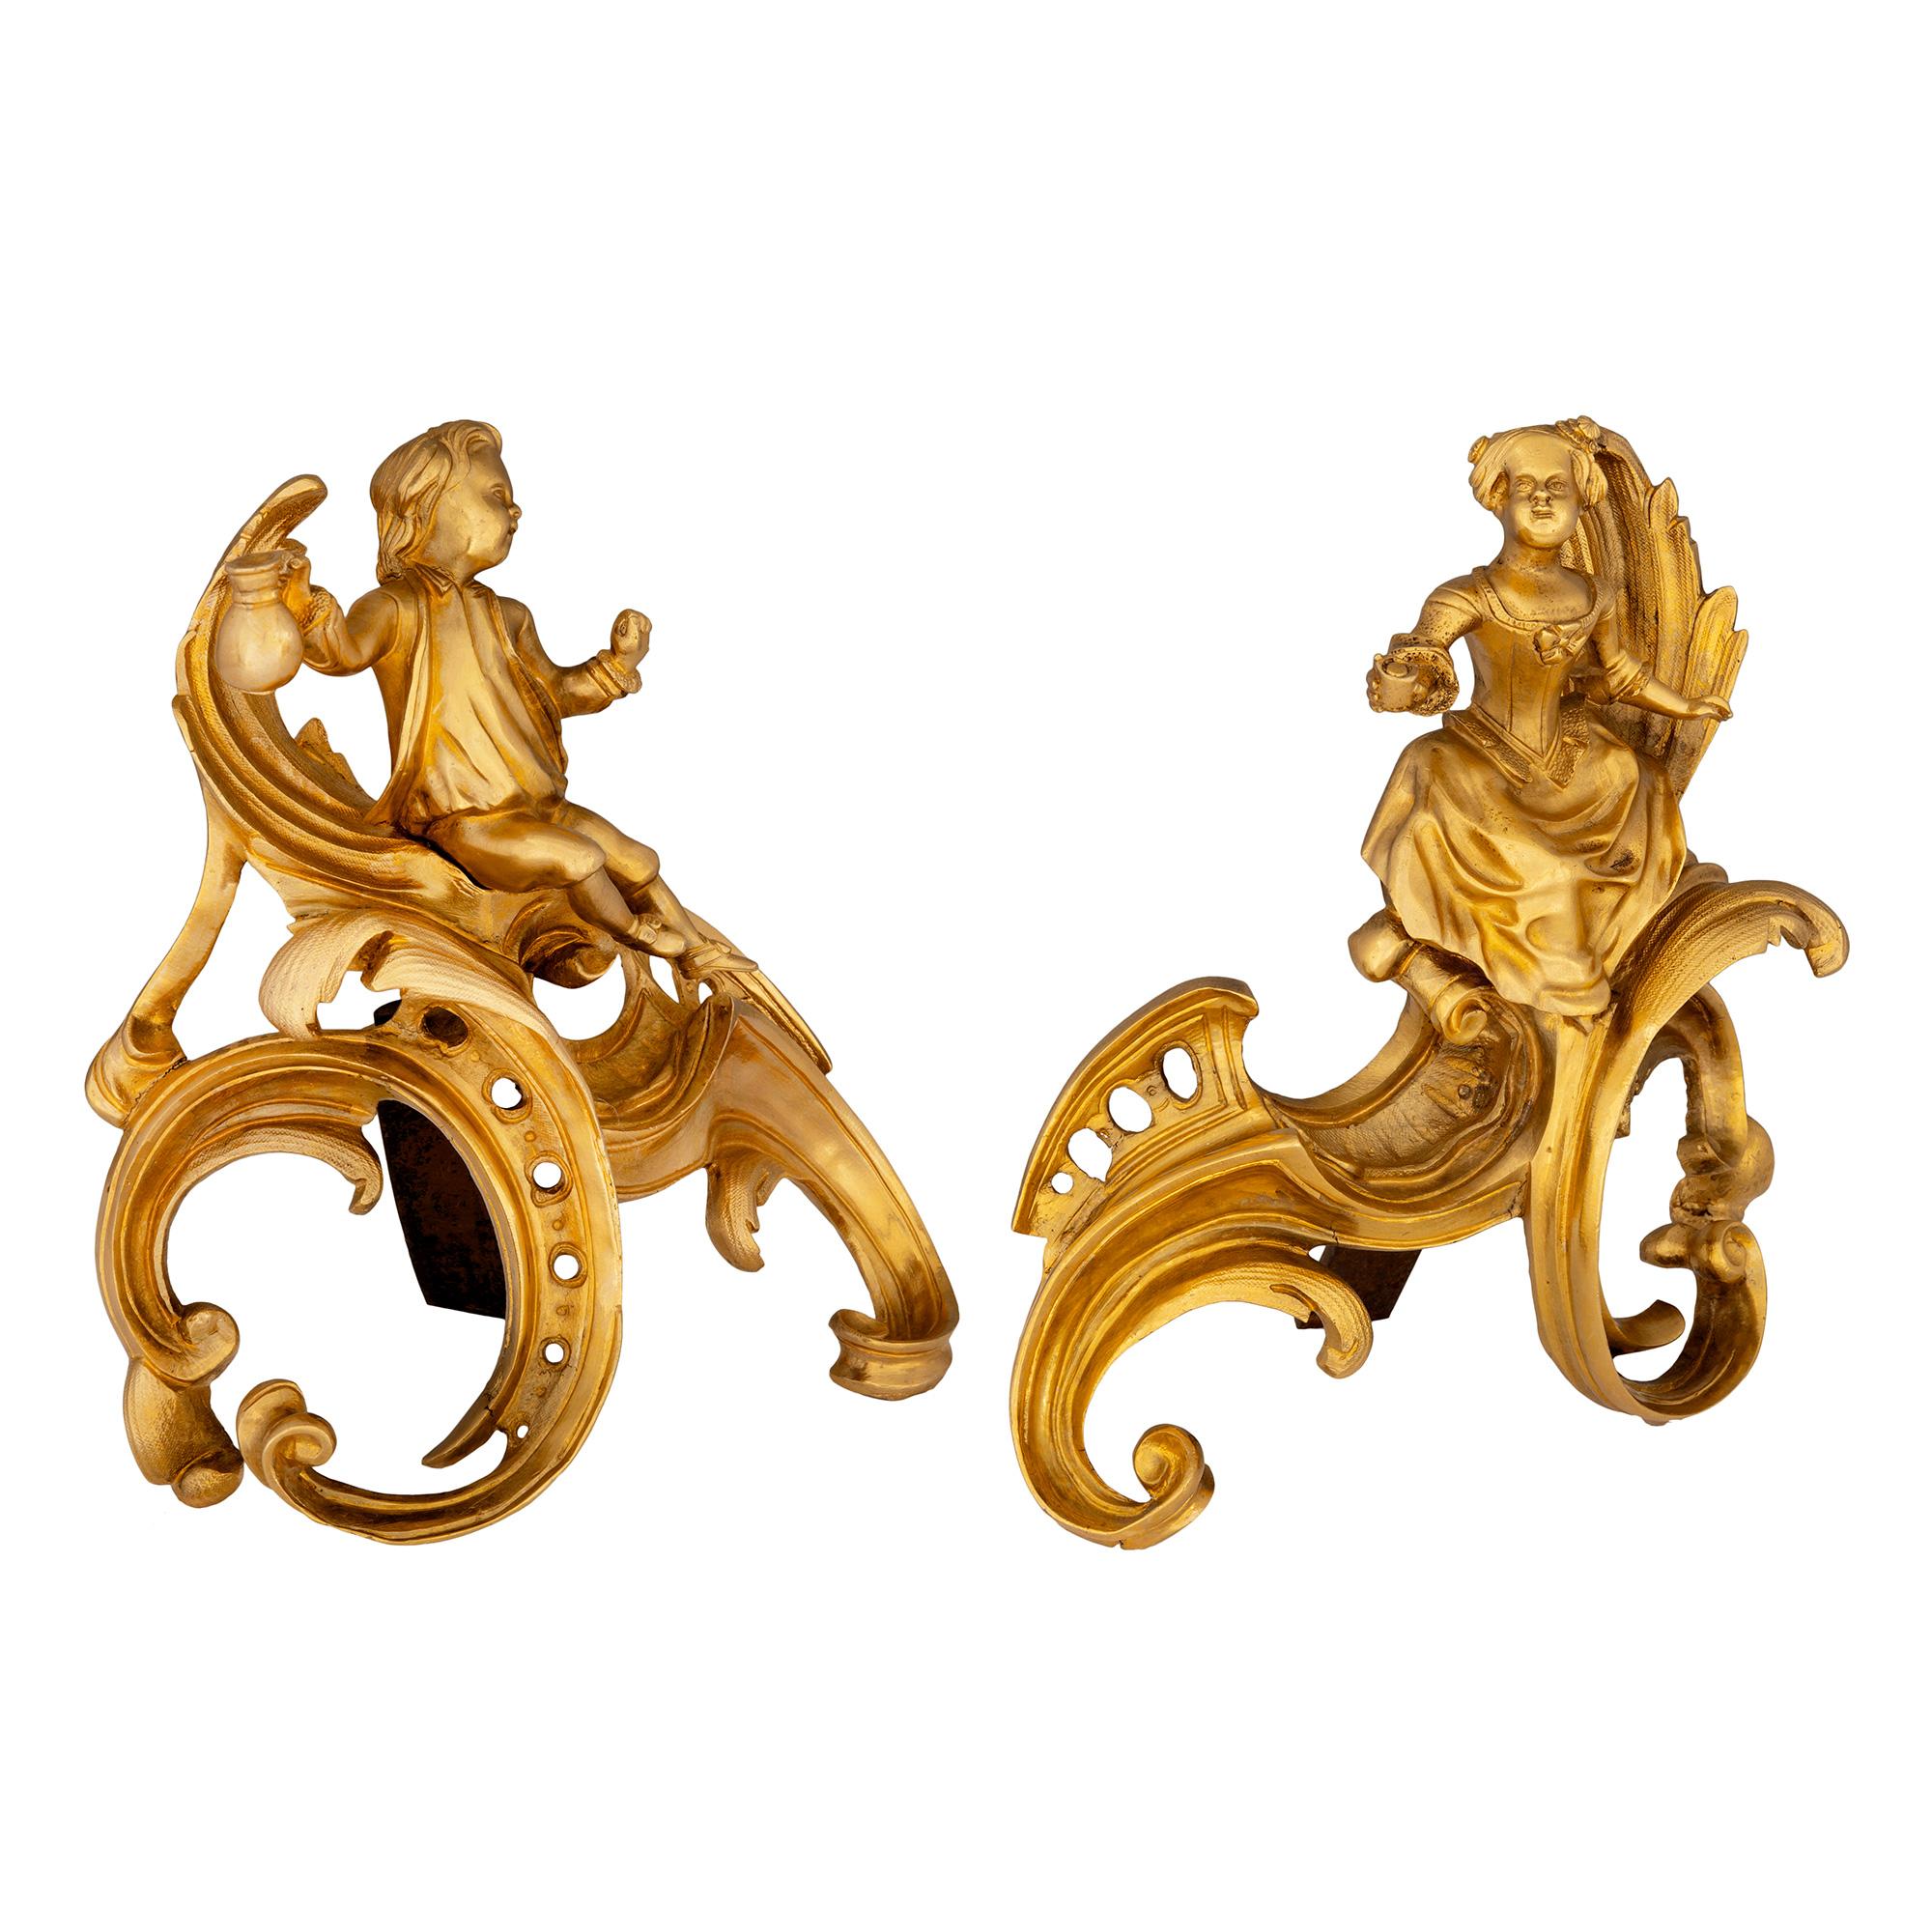 Une belle et exceptionnelle paire de chenets en bronze doré de style Louis XVI du 19ème siècle. Chaque fer à repasser doré au feu est surélevé par des supports à volutes très décoratifs aux motifs percés et tachetés. Au-dessus se trouvent deux